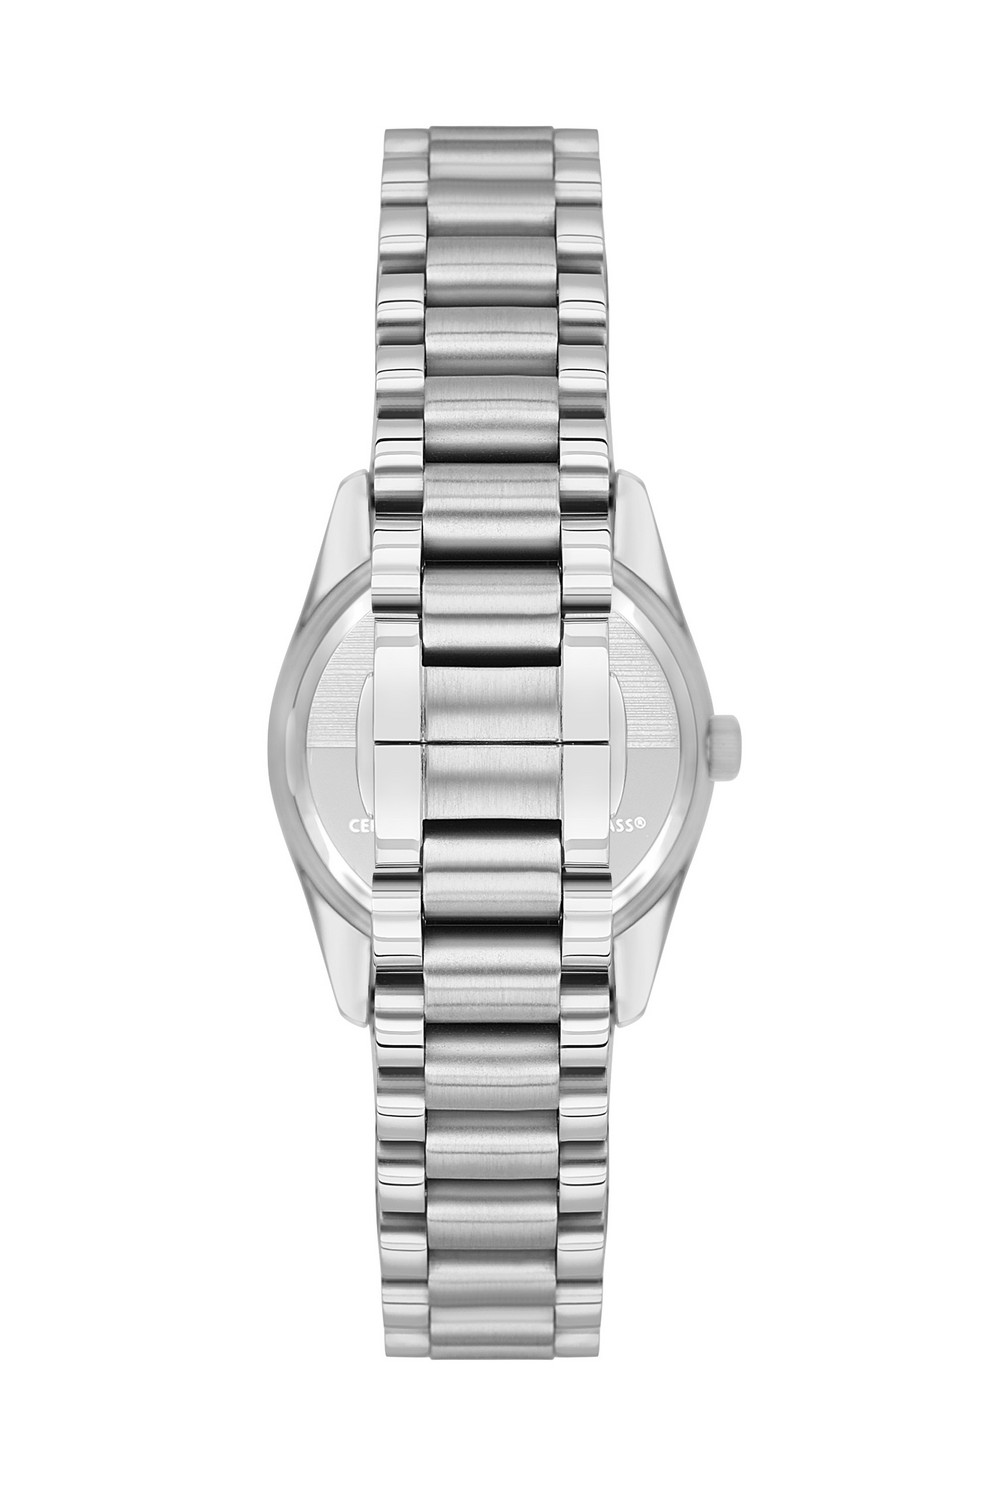 BEVERLY HILLS POLO CLUB  Женские часы, кварцевый механизм, сталь, 31 мм